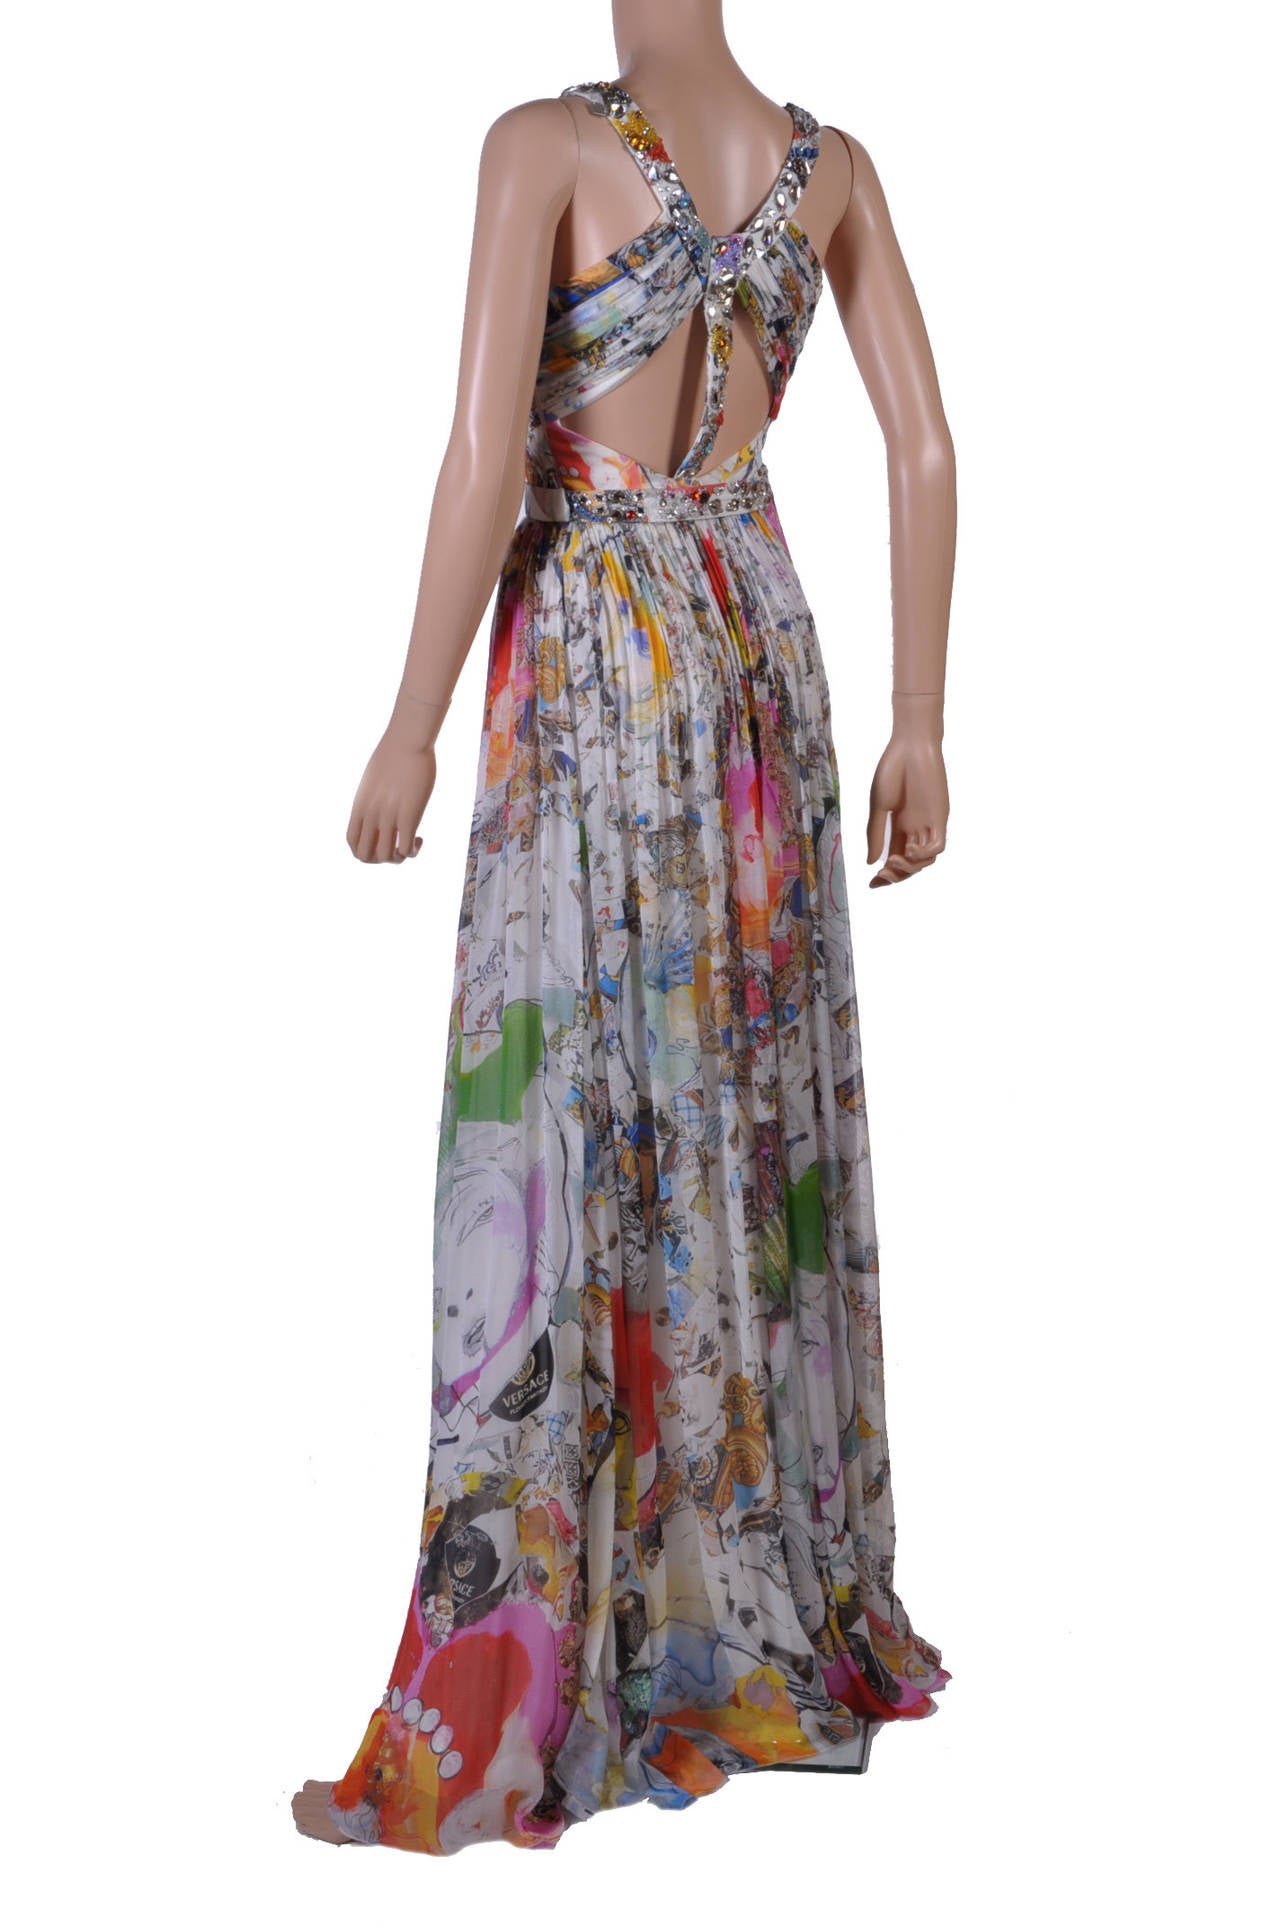 New VERSACE Julie Verhoeven Print Embellished Long Dress 1